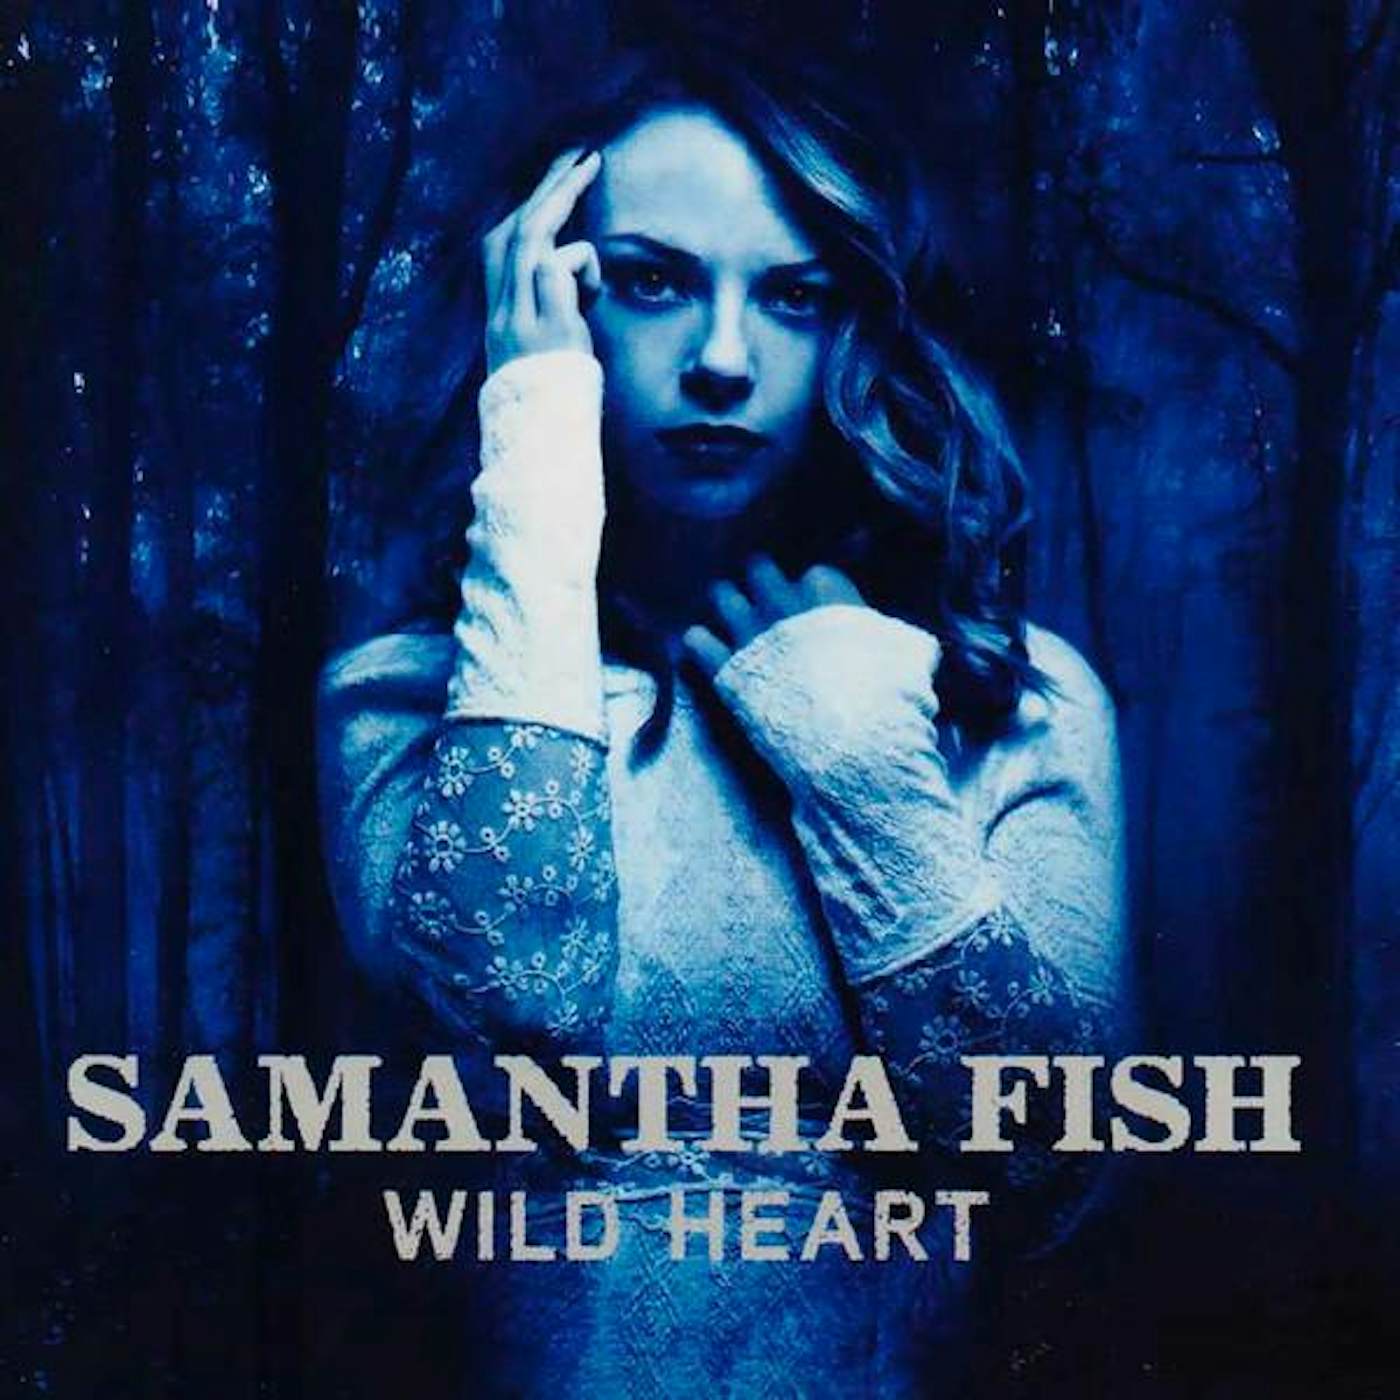 Samantha Fish WILD HEART CD